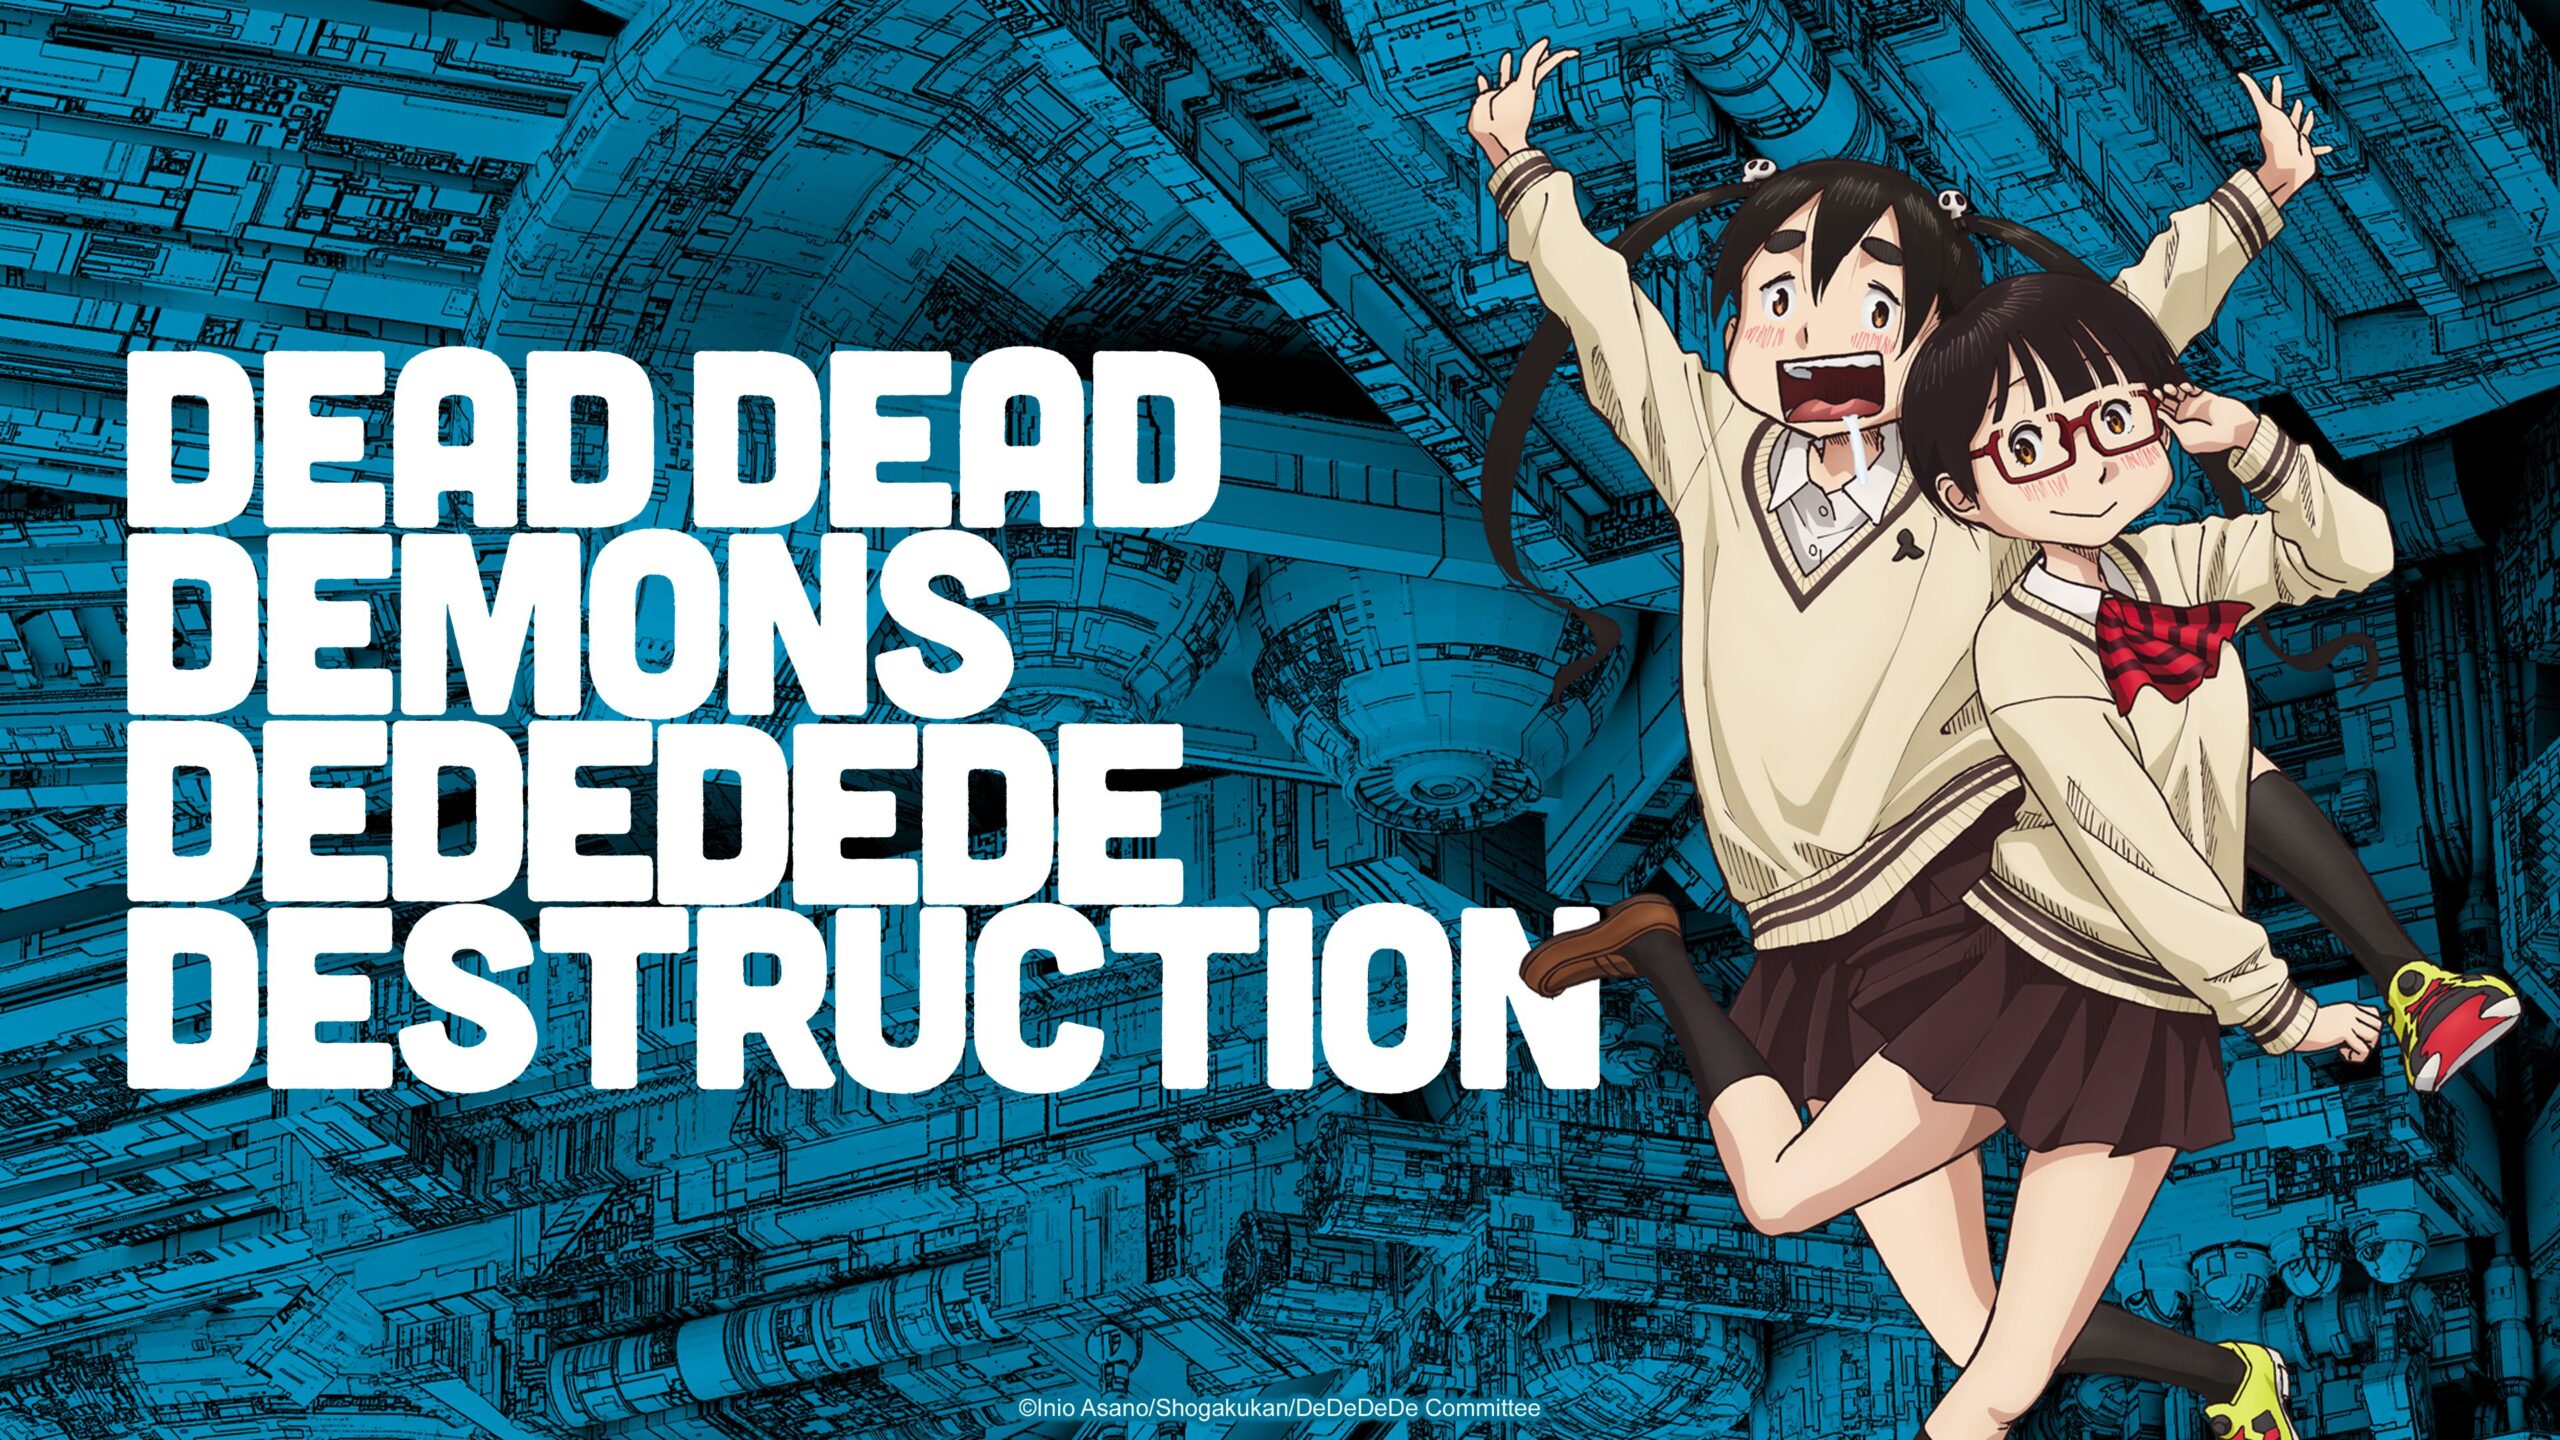 #Dead Dead Demon’s Dededede Destruction erscheint als Anime auf Crunchyroll